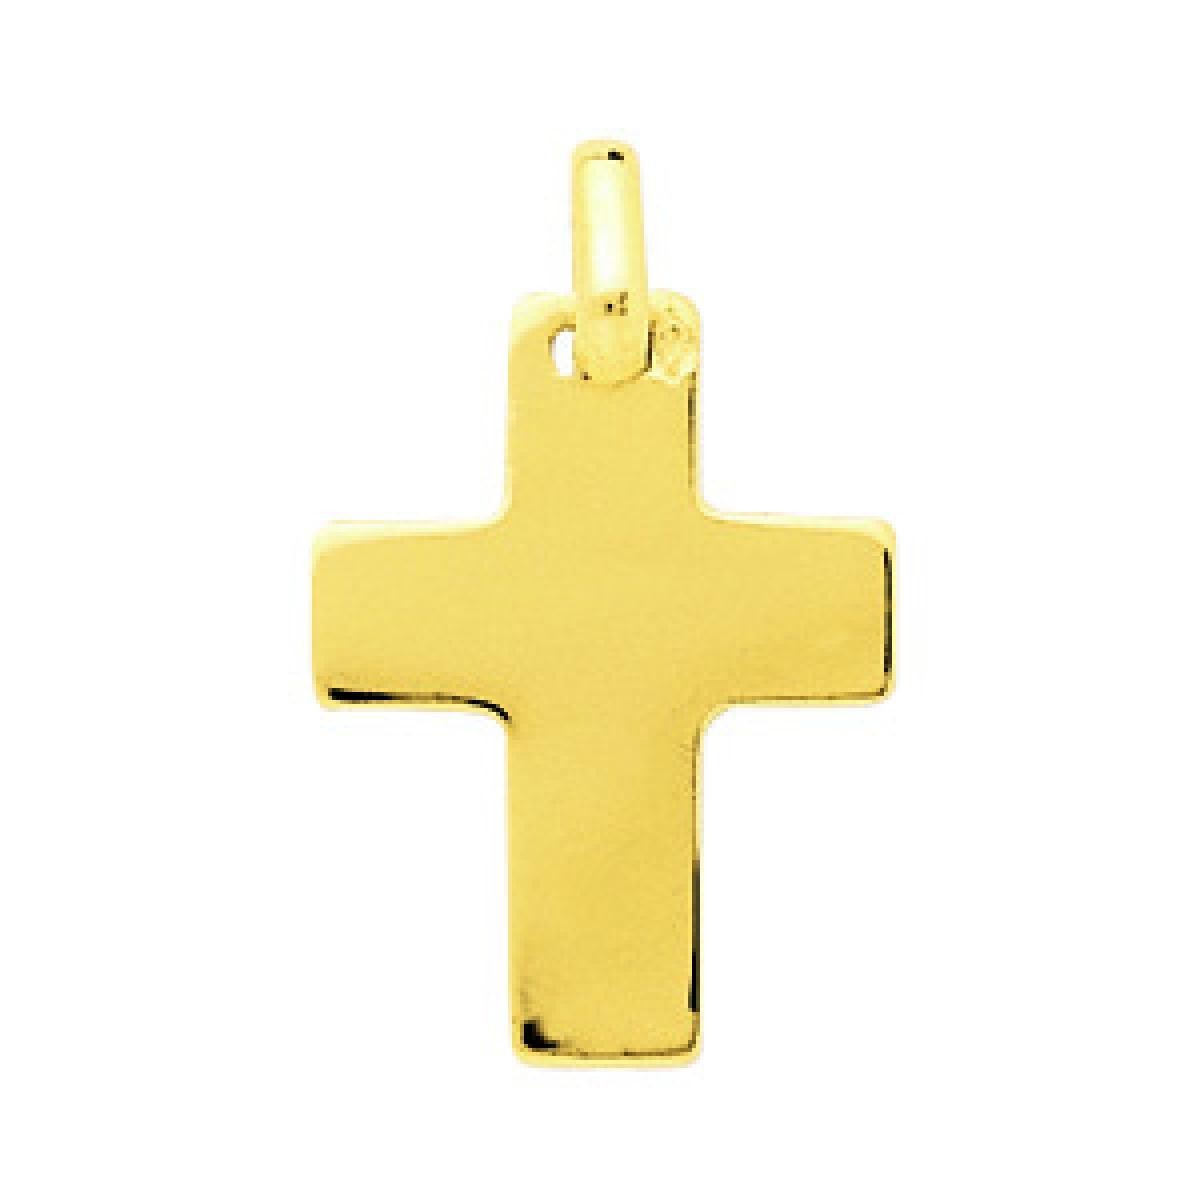 Pendentif Croix or 750/1000 jaune (18K)